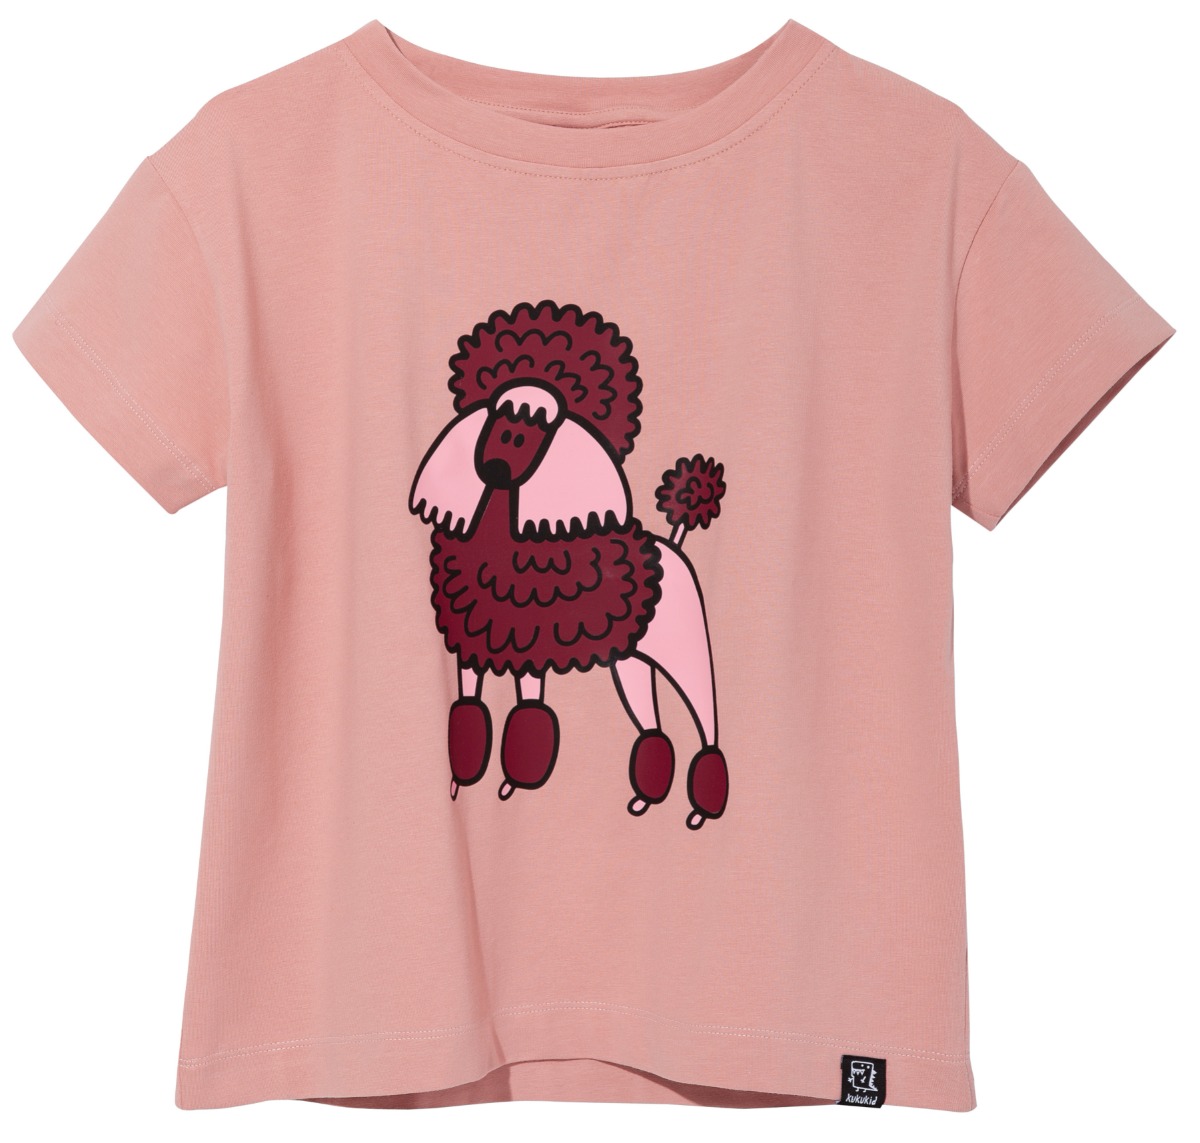 t-shirt(pink single poddle)